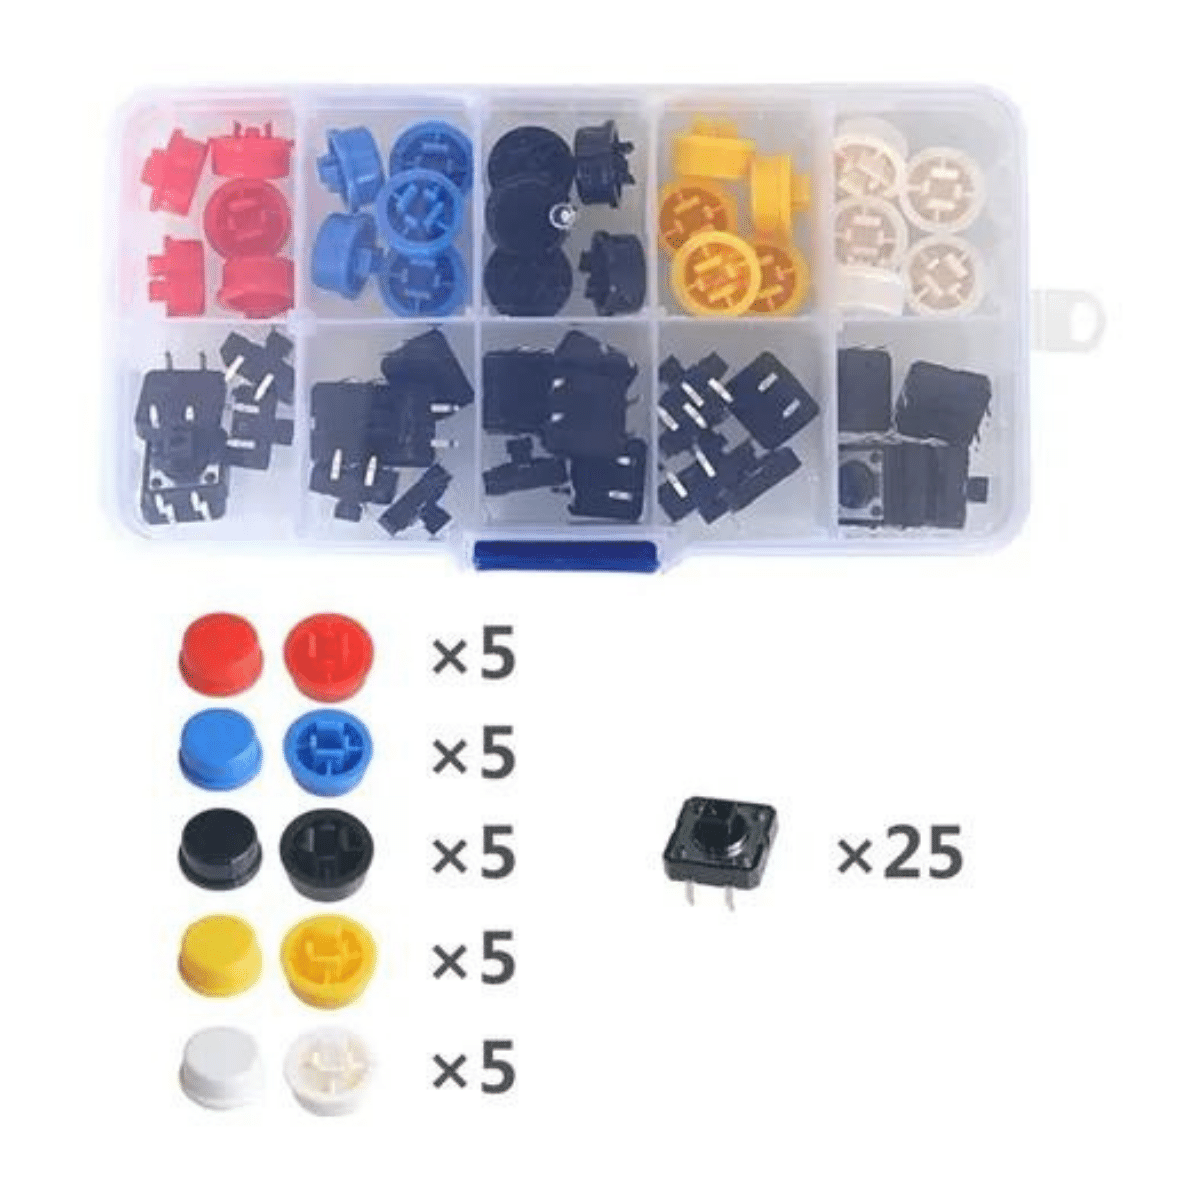 Kit com 25 Push Button / Chave Táctil com capas coloridas - 5 cores